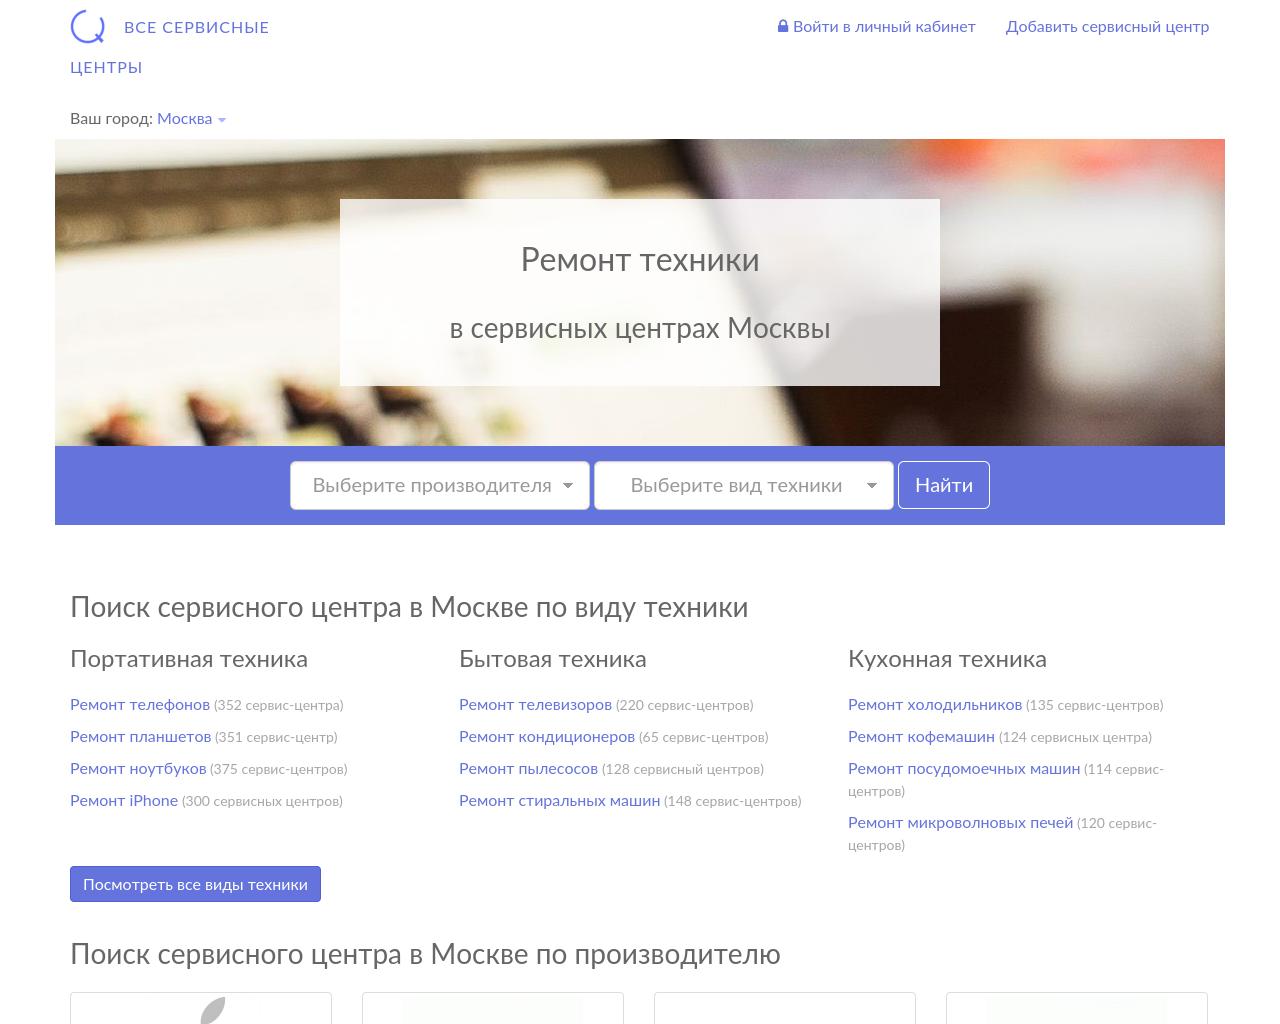 Изображение сайта service-centers.ru в разрешении 1280x1024